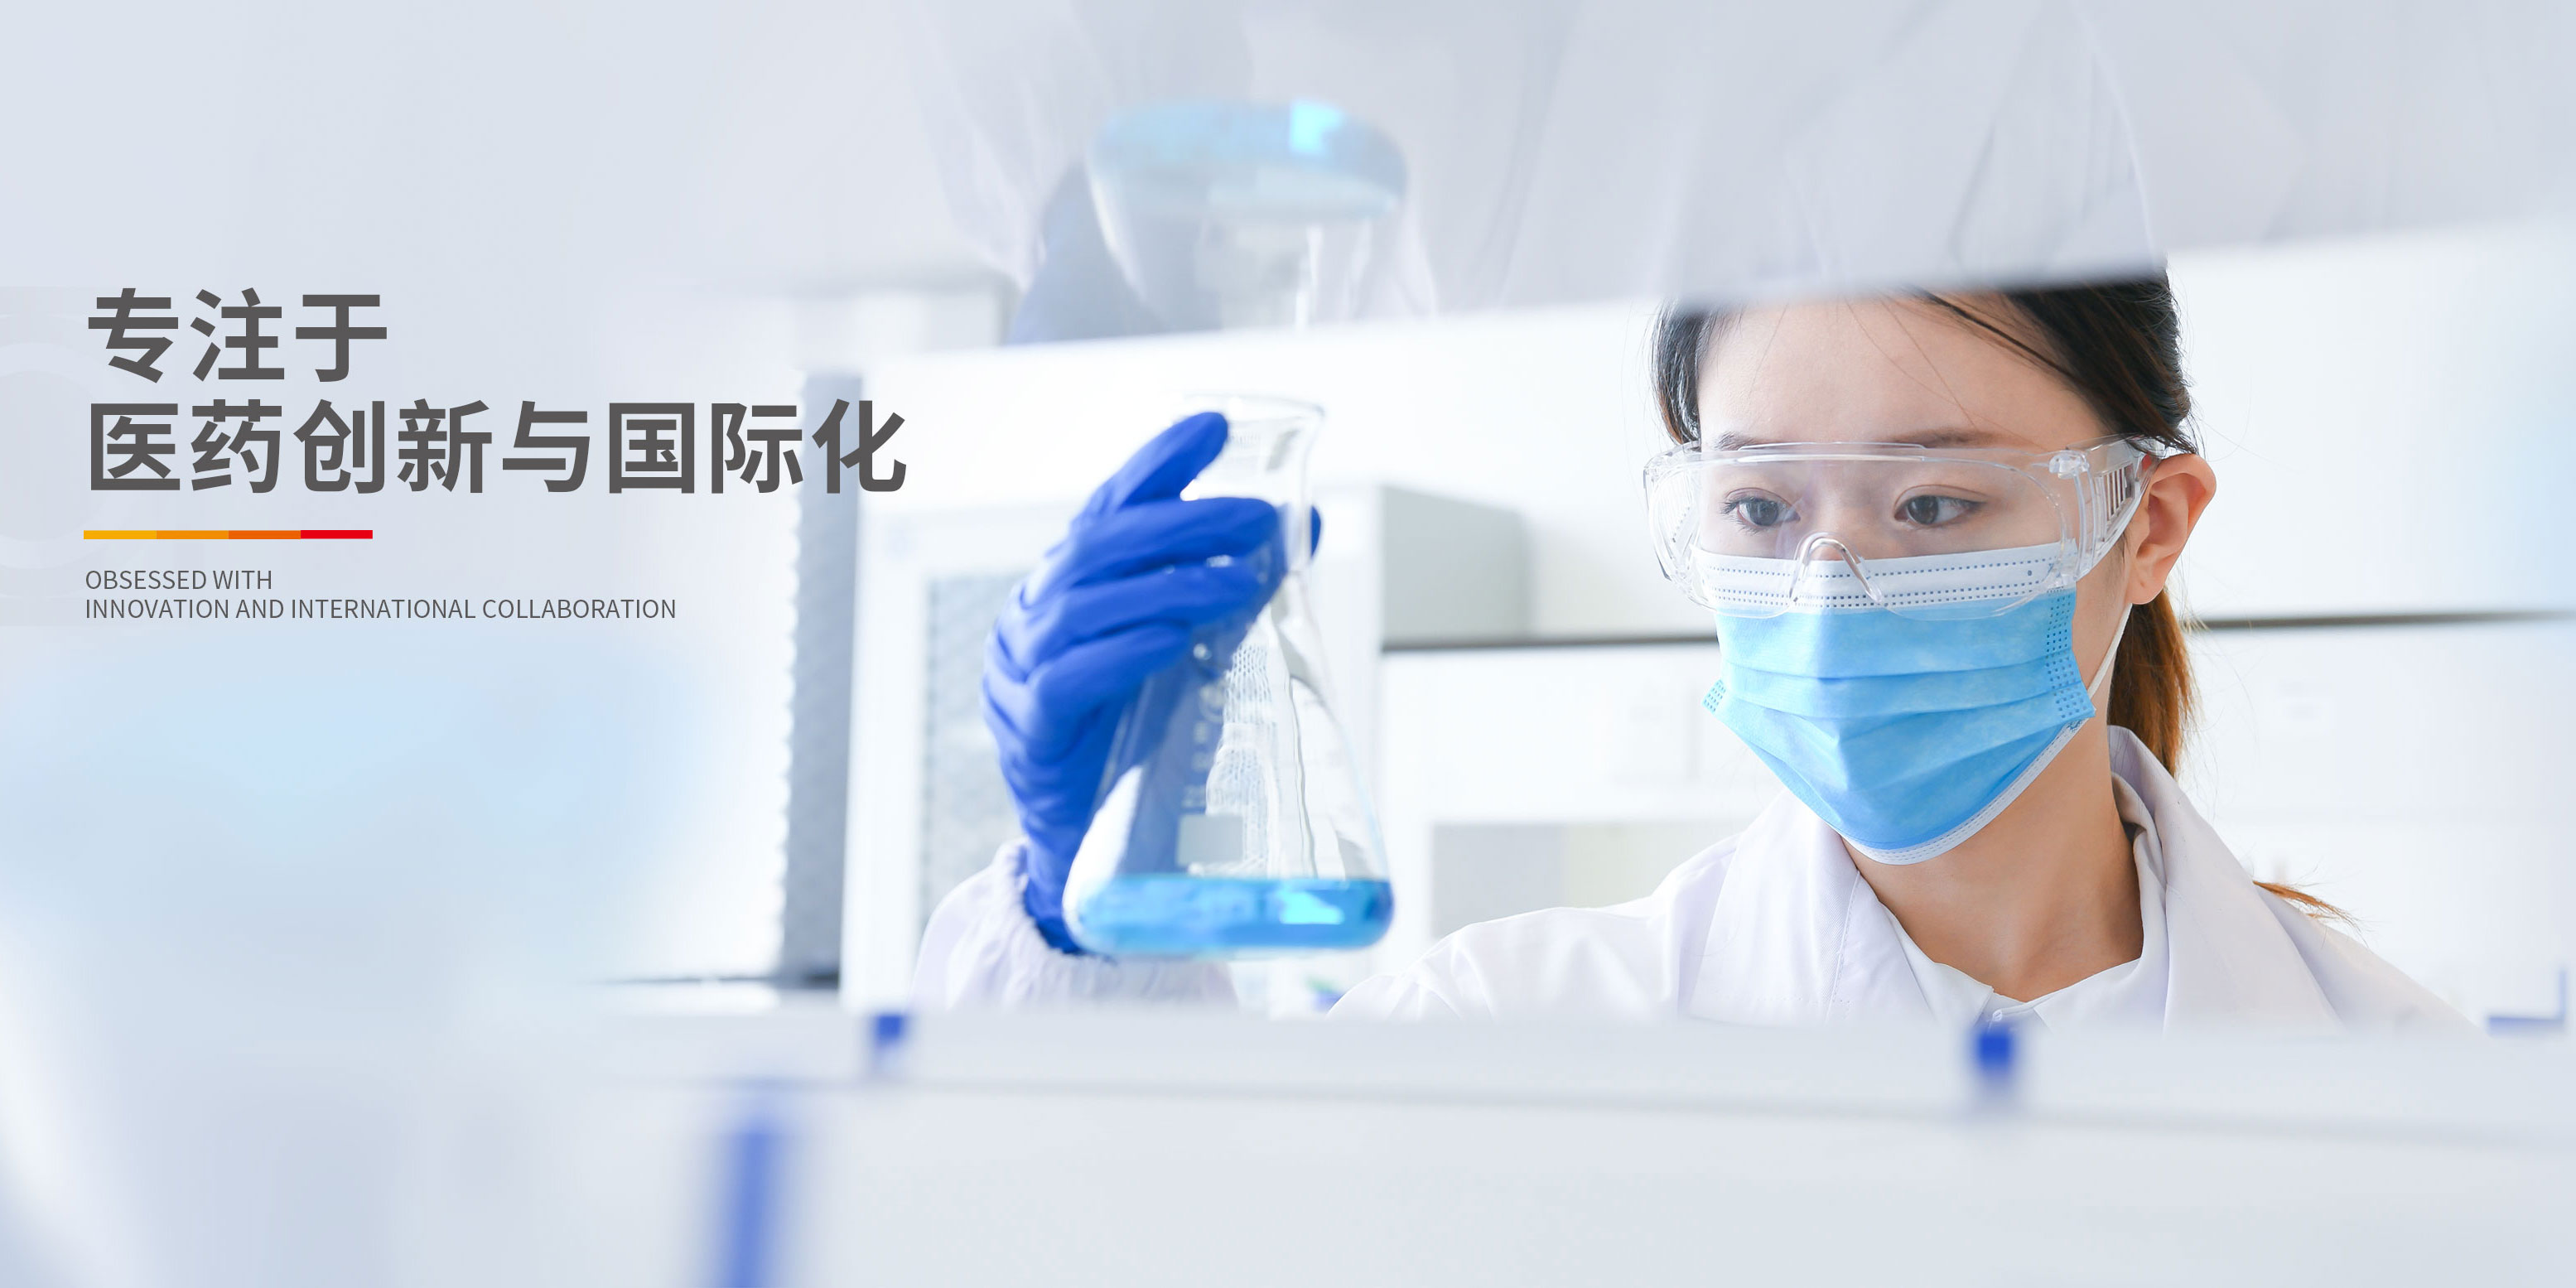 中國抗腫瘤、肝病領域的知名企業